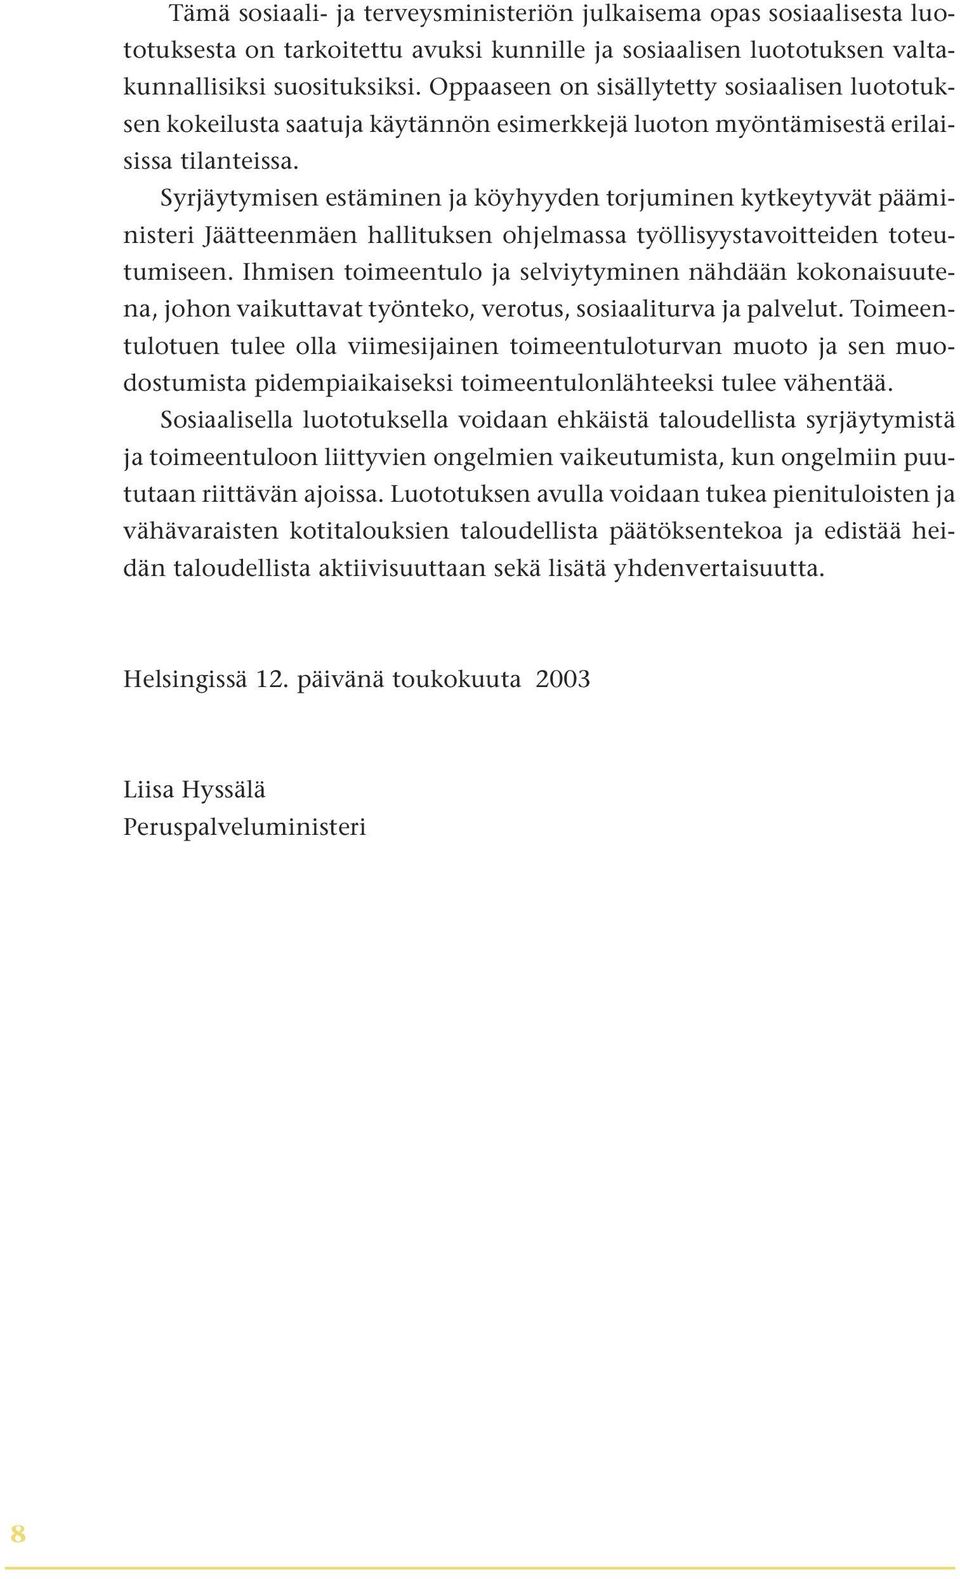 Syrjäytymisen estäminen ja köyhyyden torjuminen kytkeytyvät pääministeri Jäätteenmäen hallituksen ohjelmassa työllisyystavoitteiden toteutumiseen.